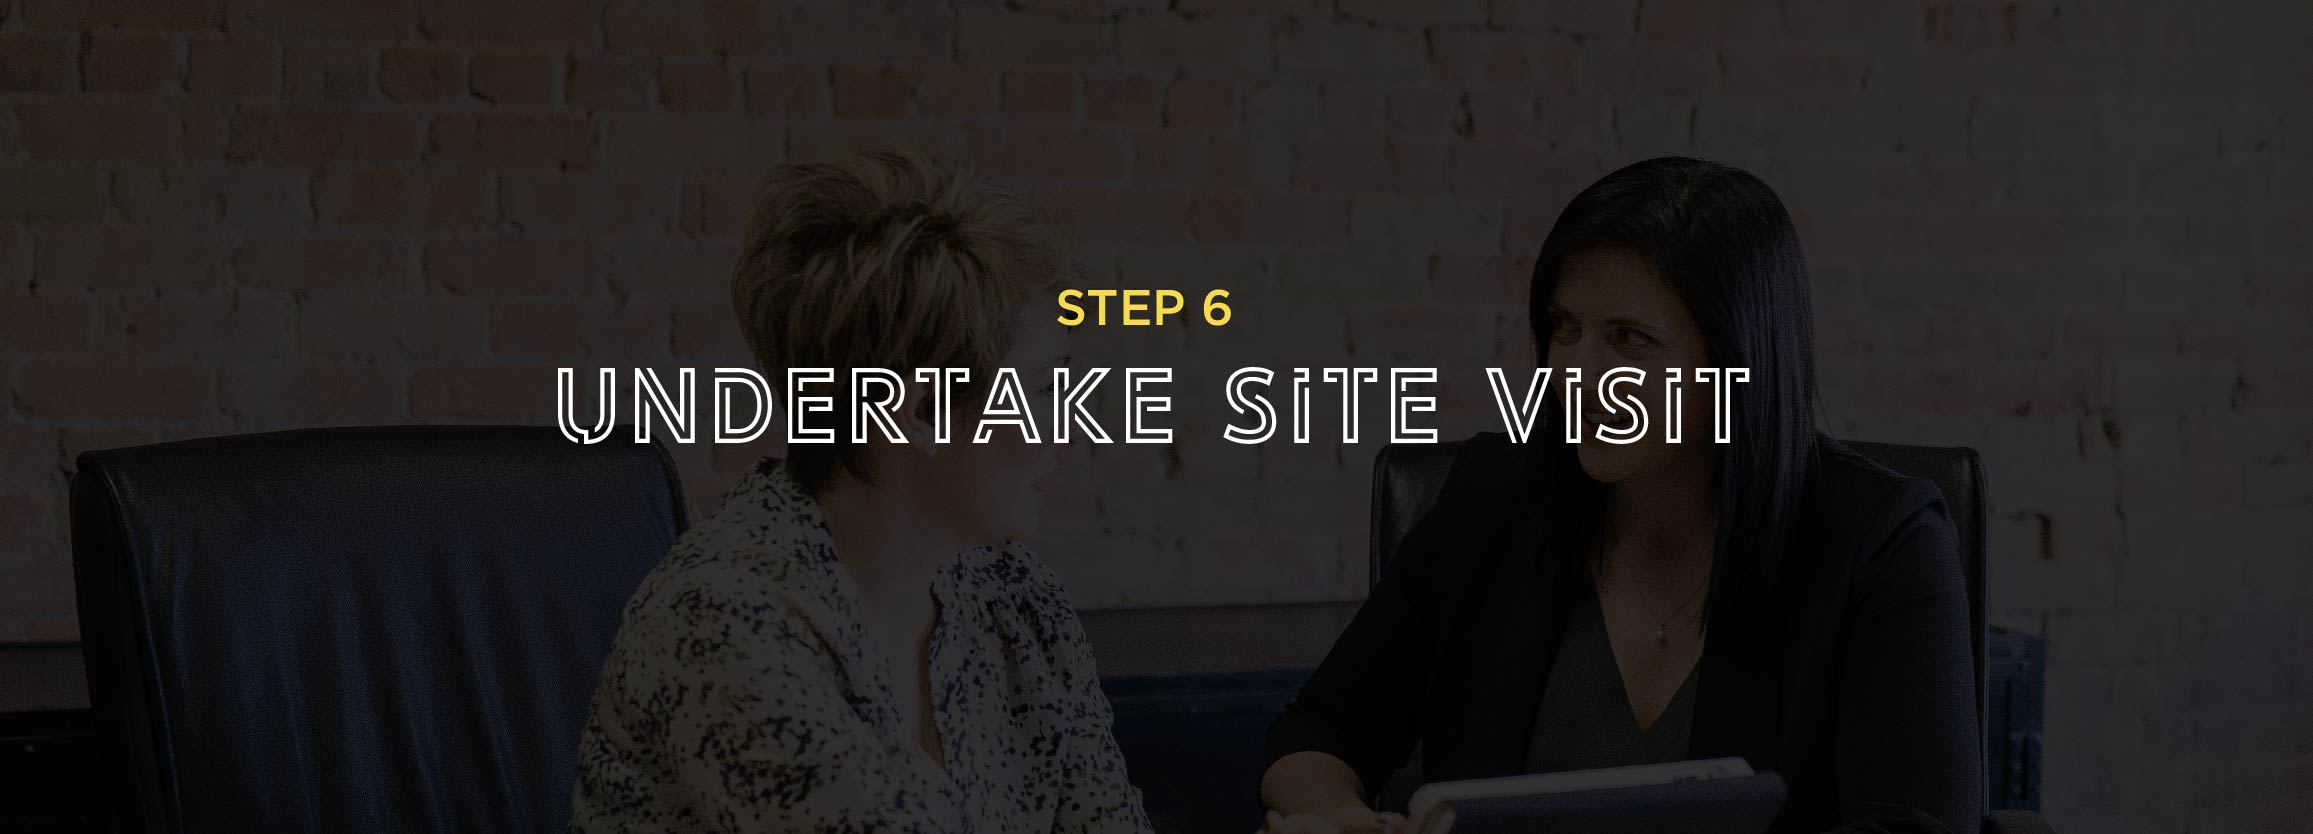 Step 6 - Undertake site visit